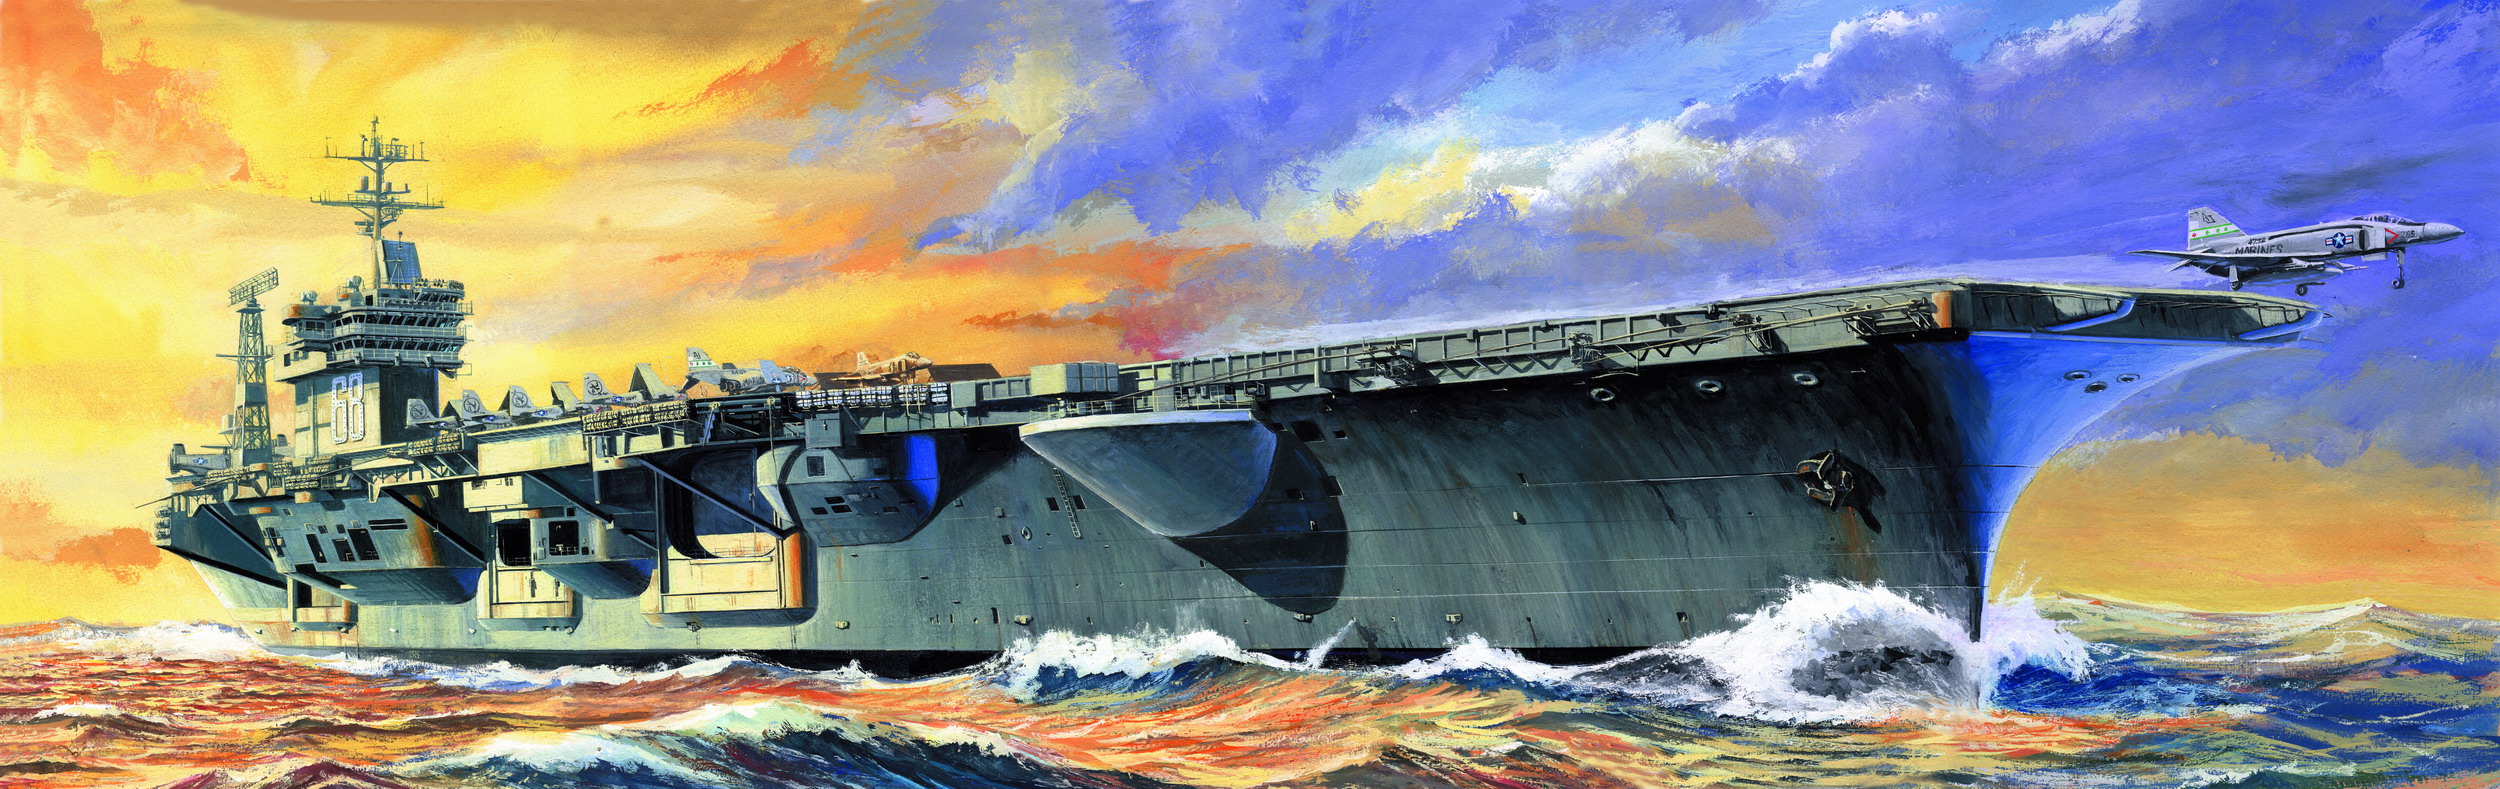 рисунок USS Nimitz CVN-68